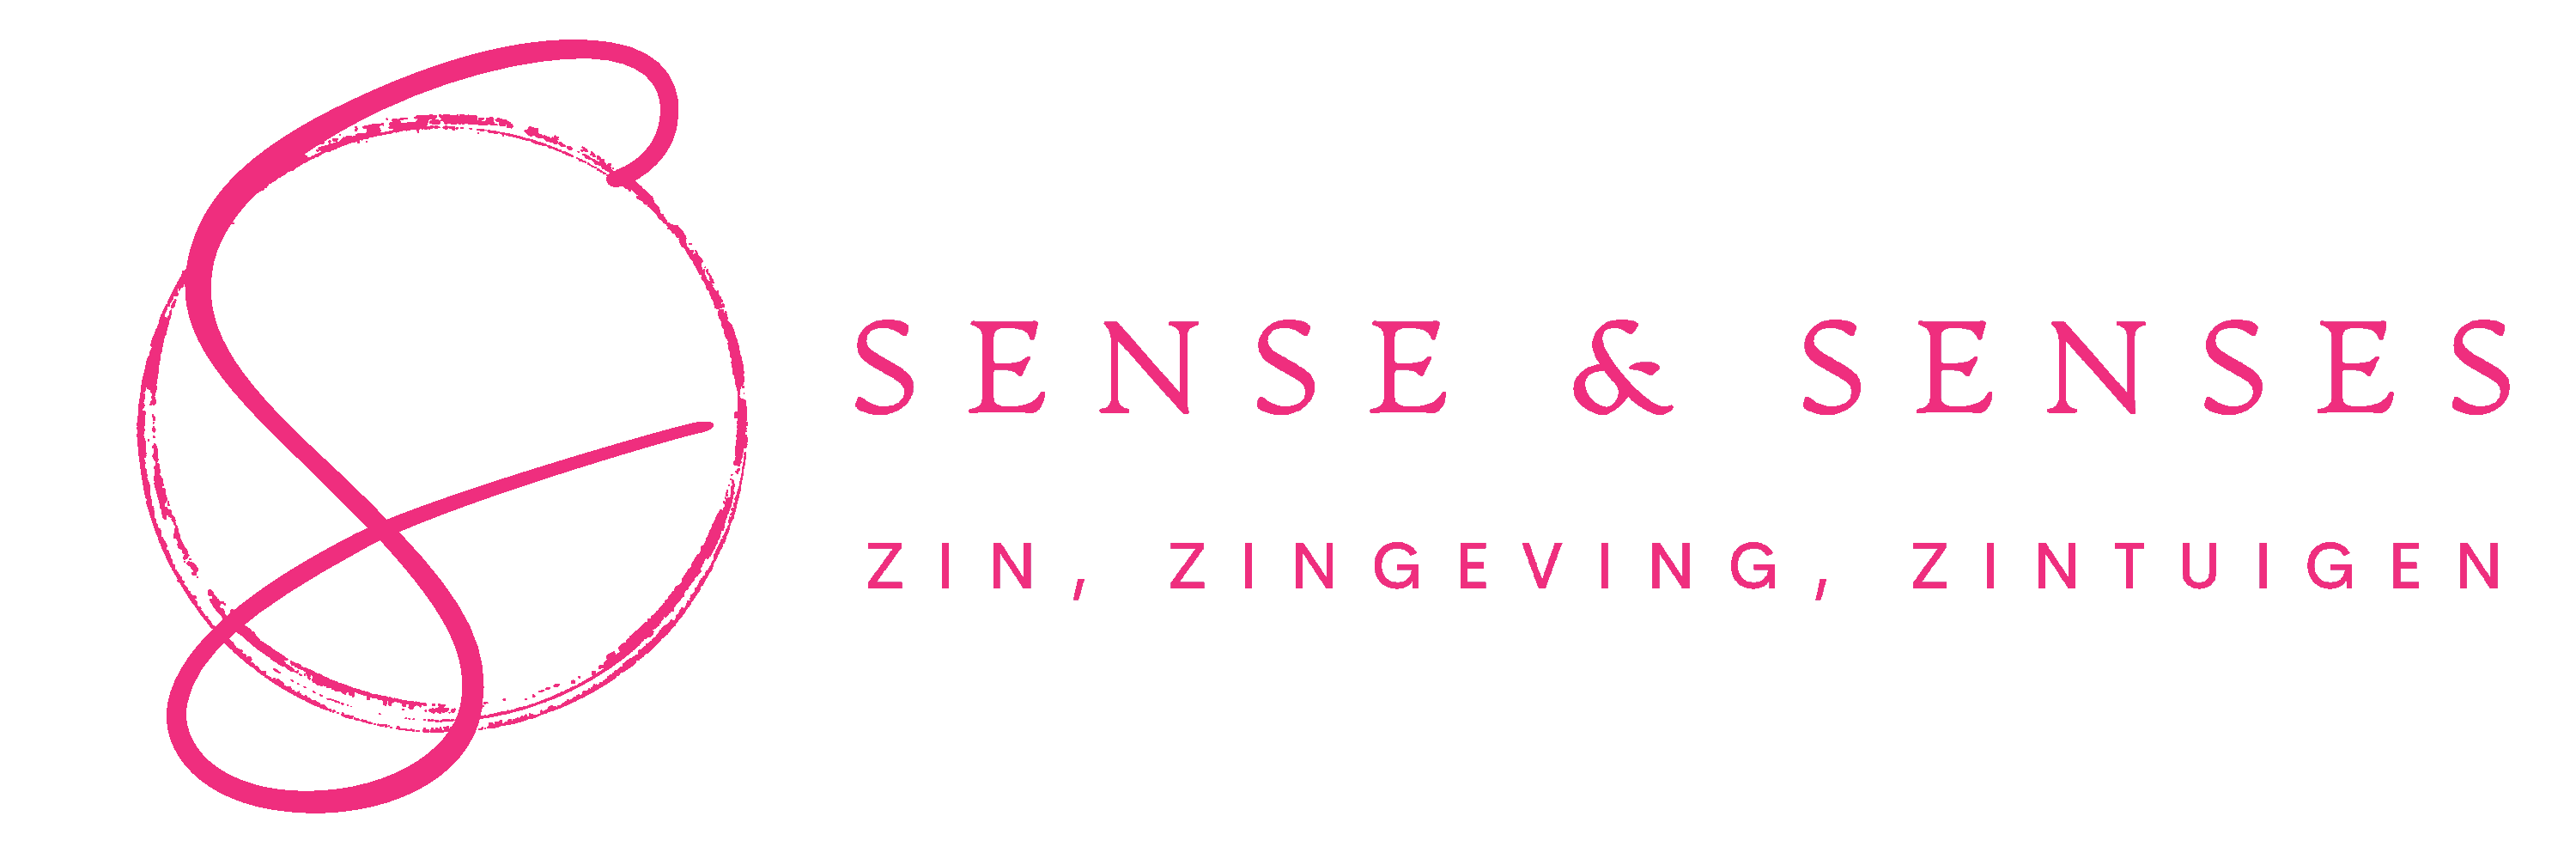 sense & senses: zin, zingeving, zintuigen